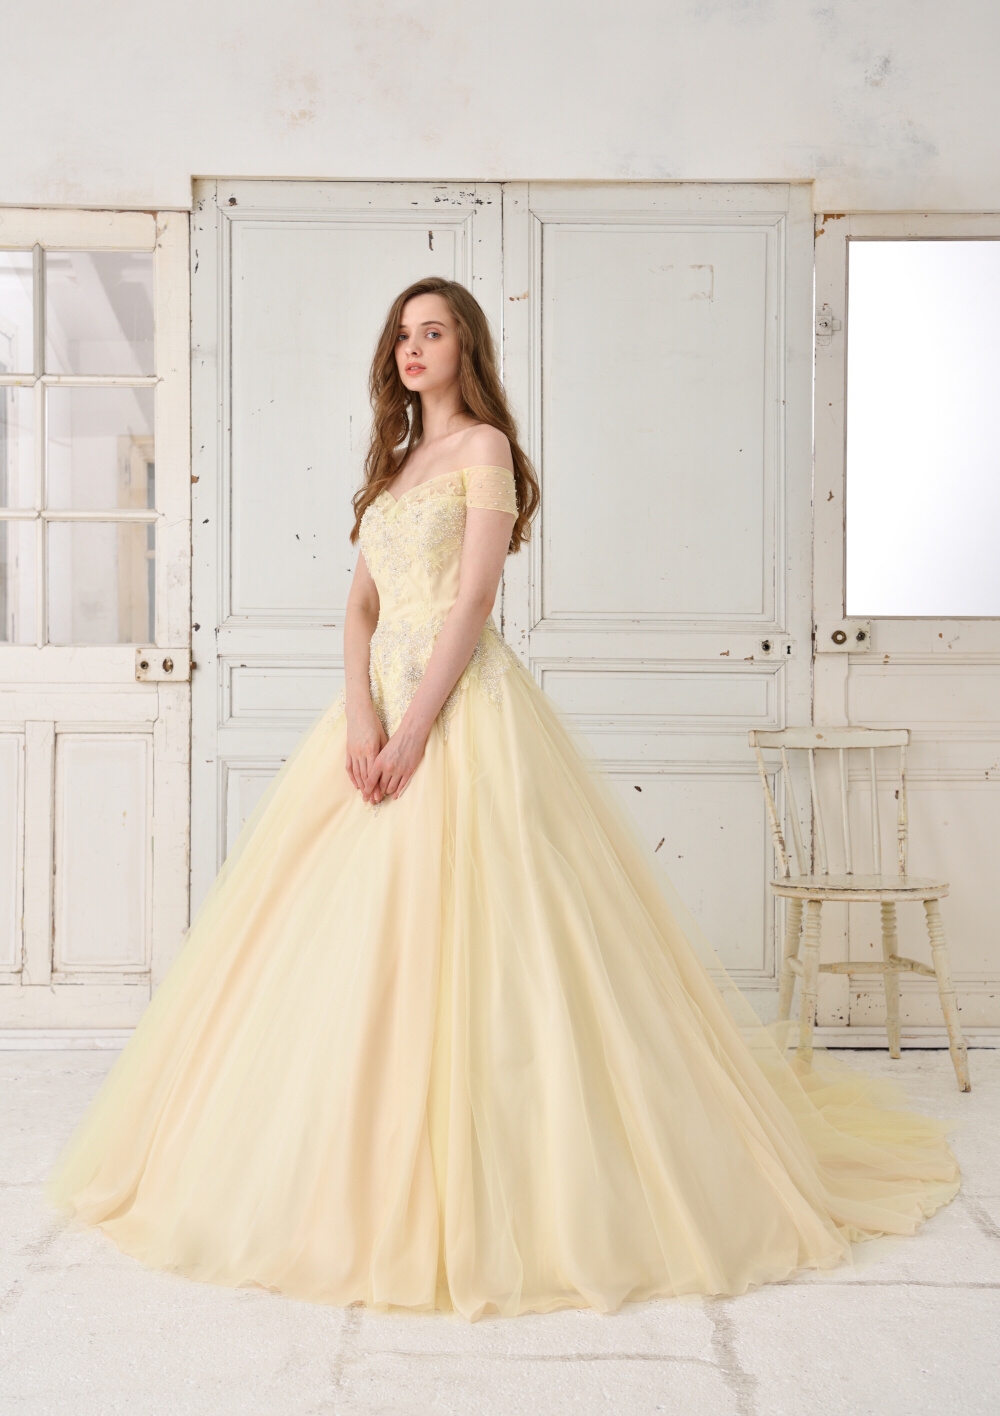 LPV-75 YE ' La Putite Verite ' AICLEAR Original Dress | 株式会社 アイクリア